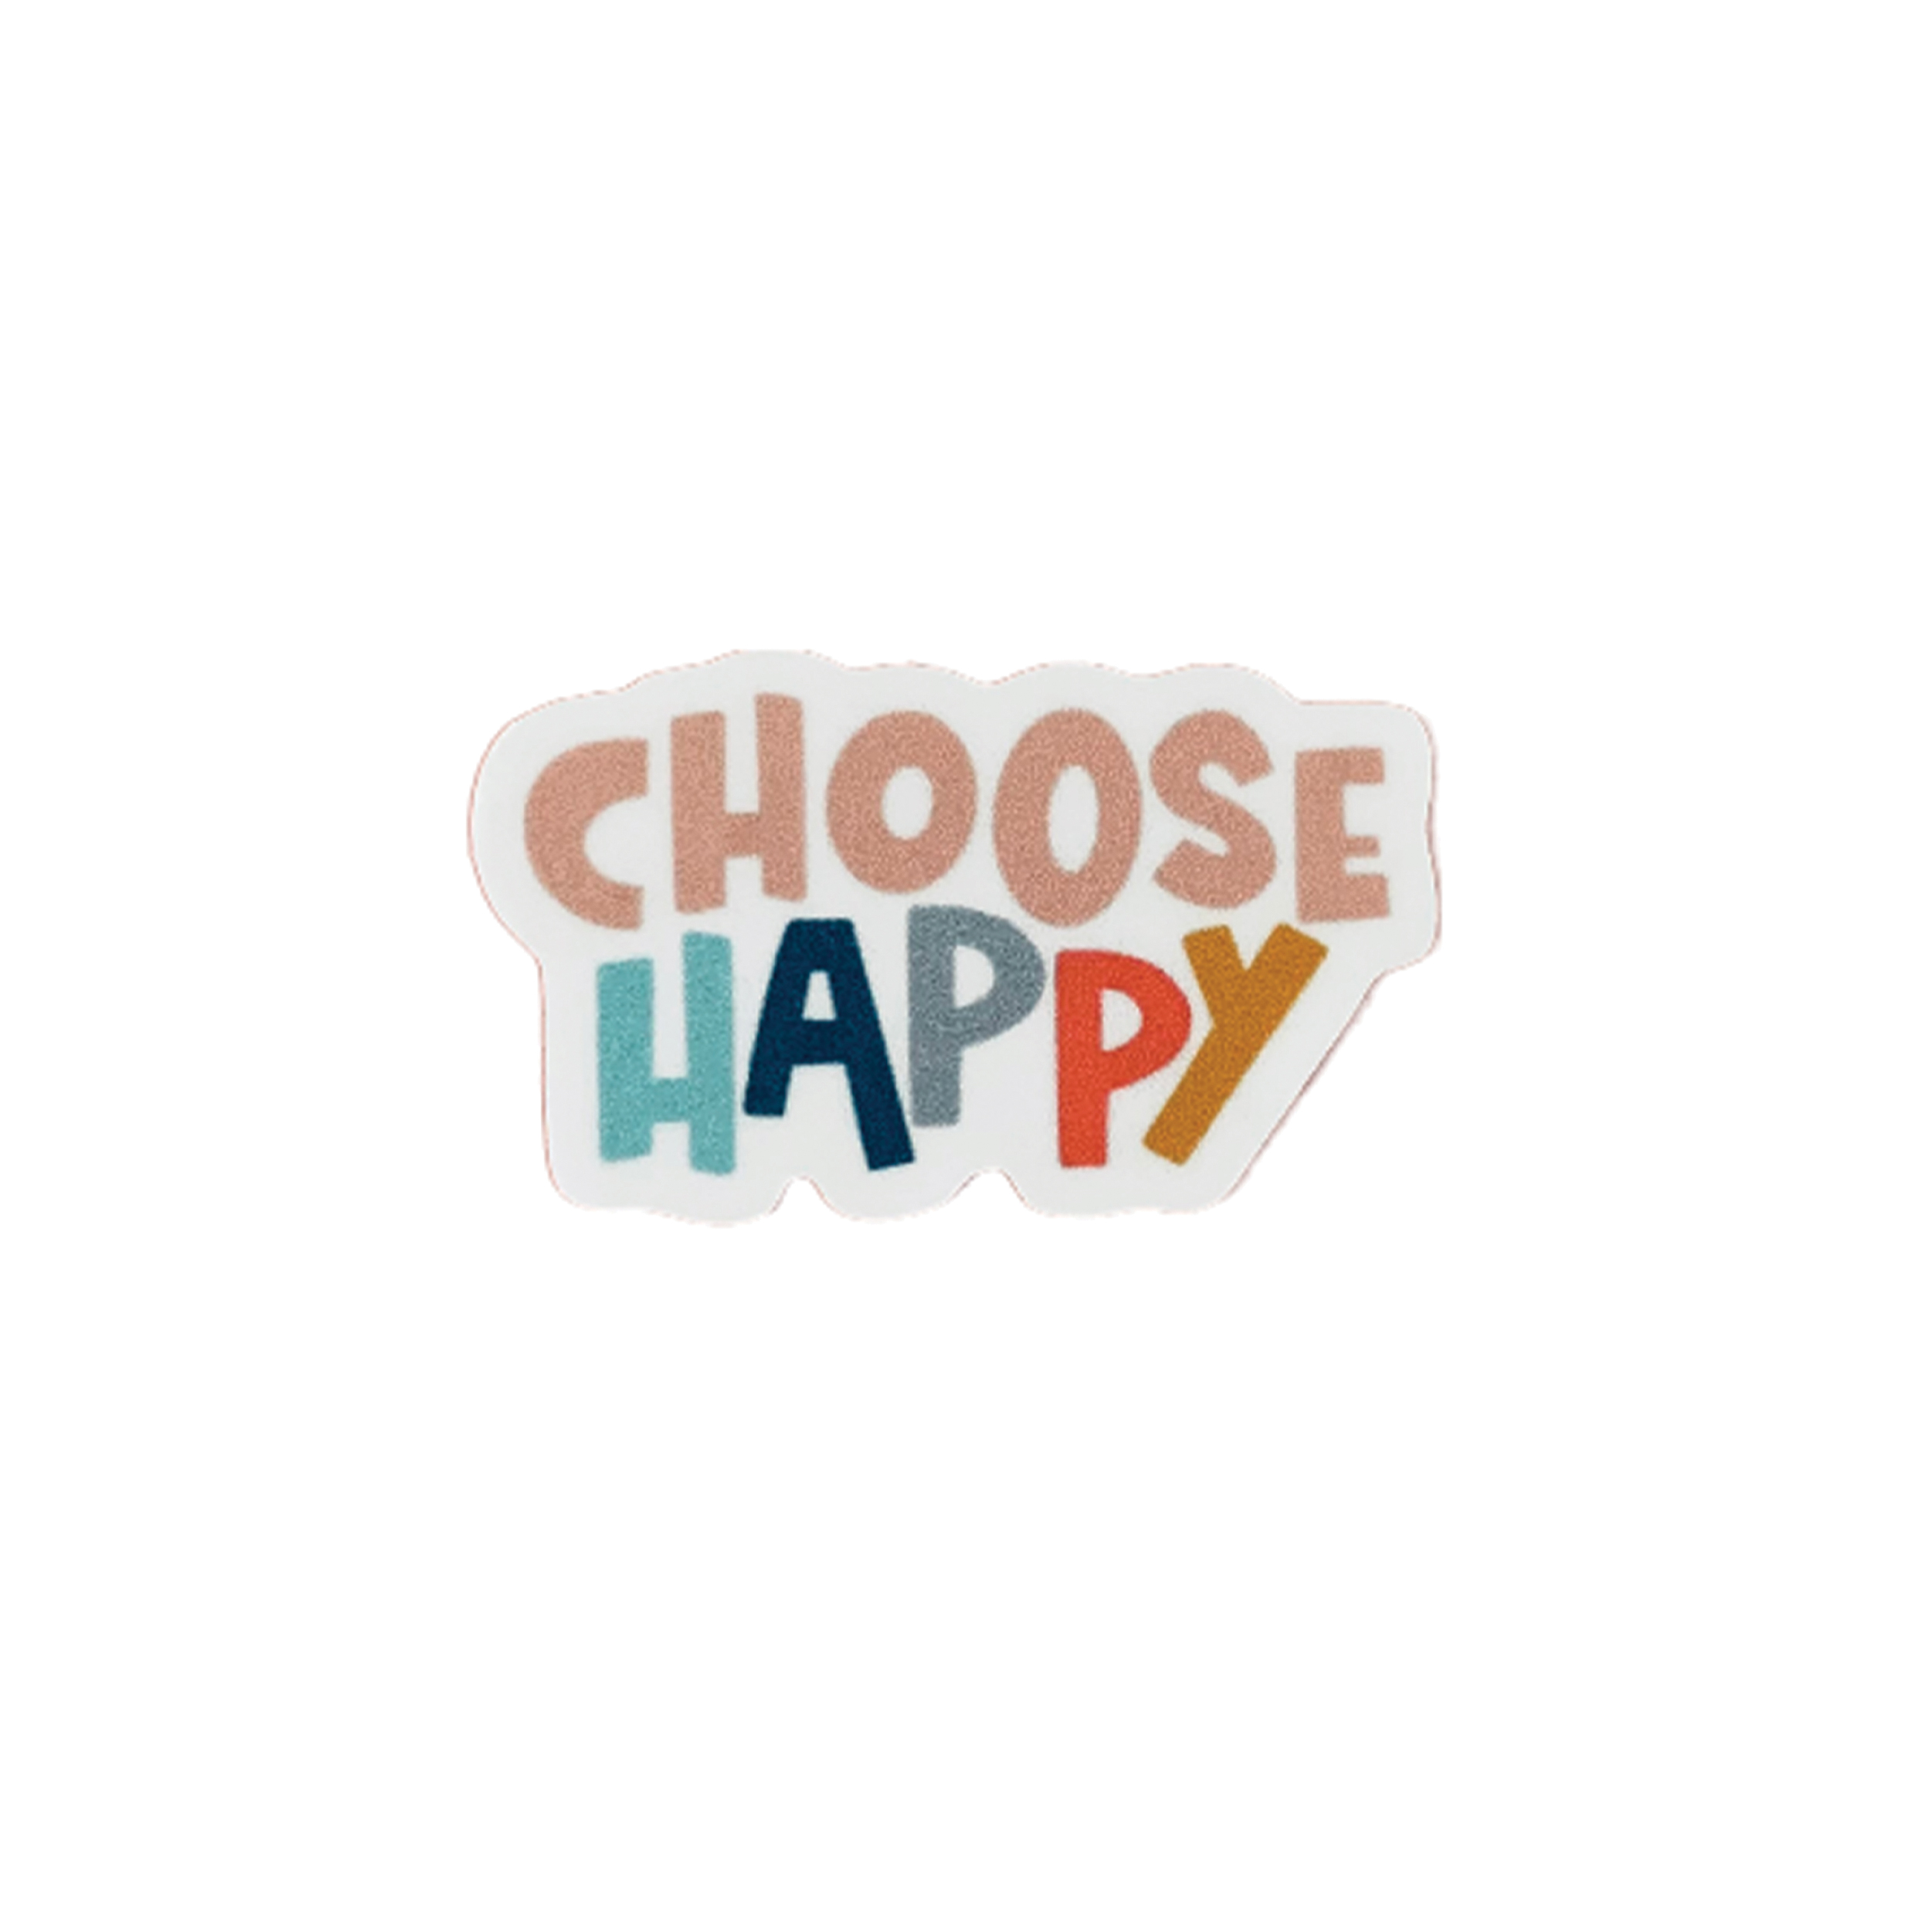 استیکر لپتاپ طرح choose happy کد 0113